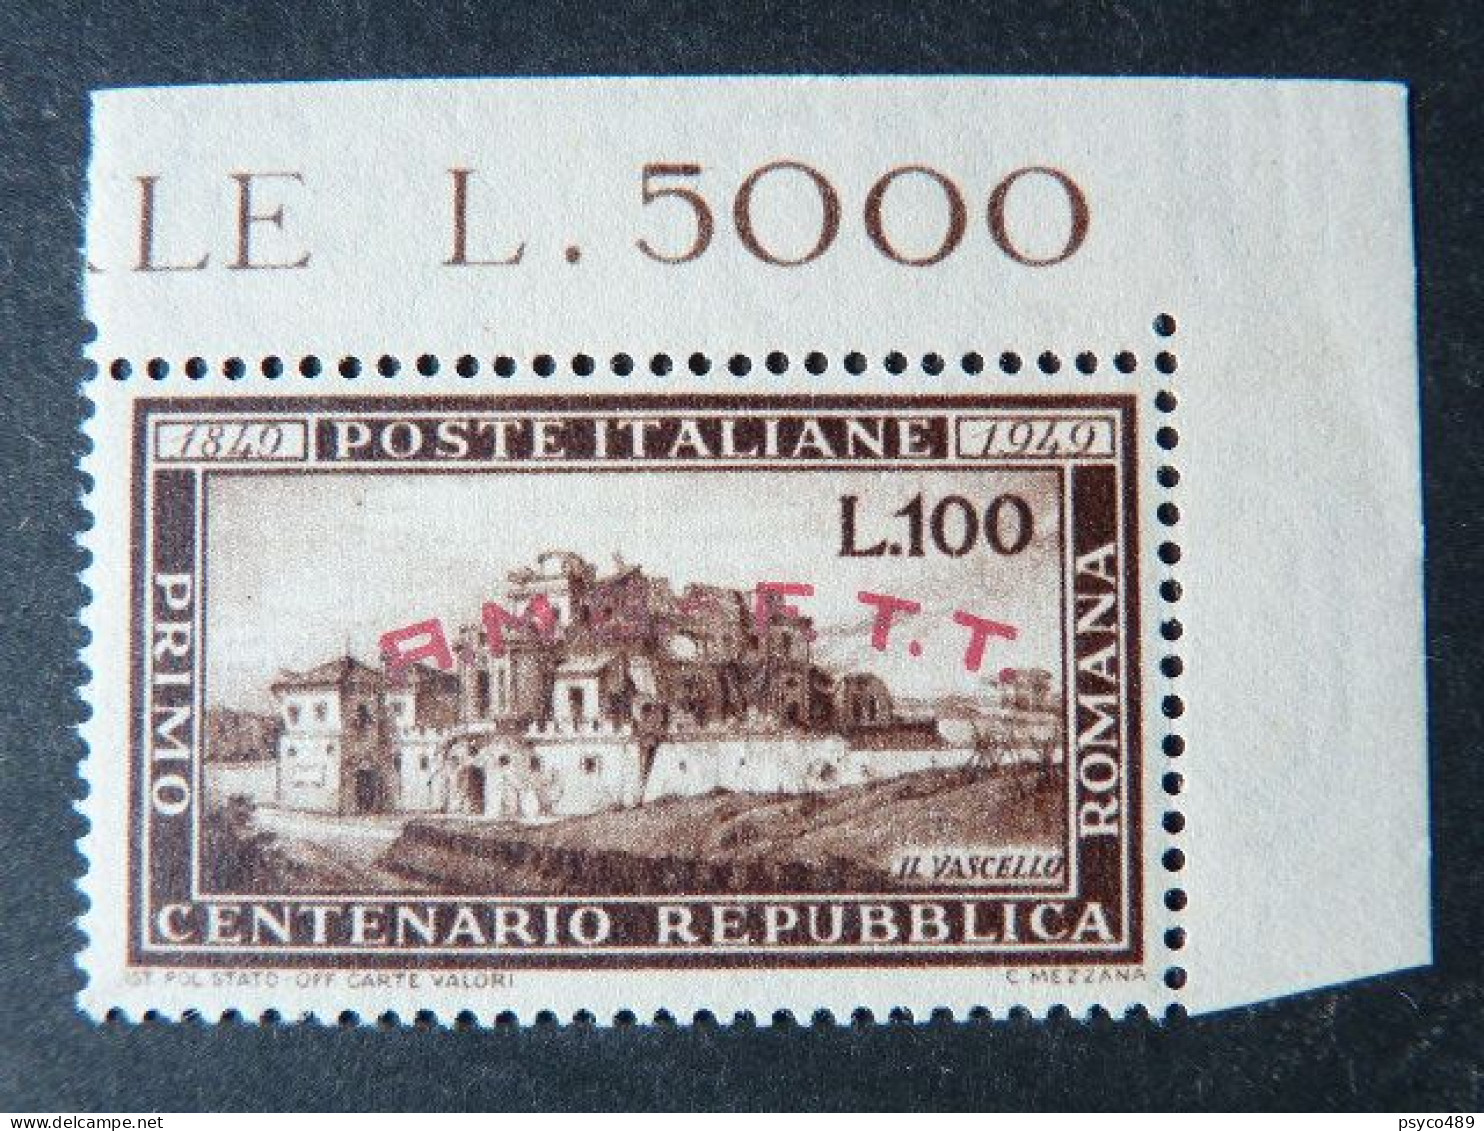 ITALIA Trieste -1945-54- "Collezione quasi completa" MNH** & USº (descrizione)